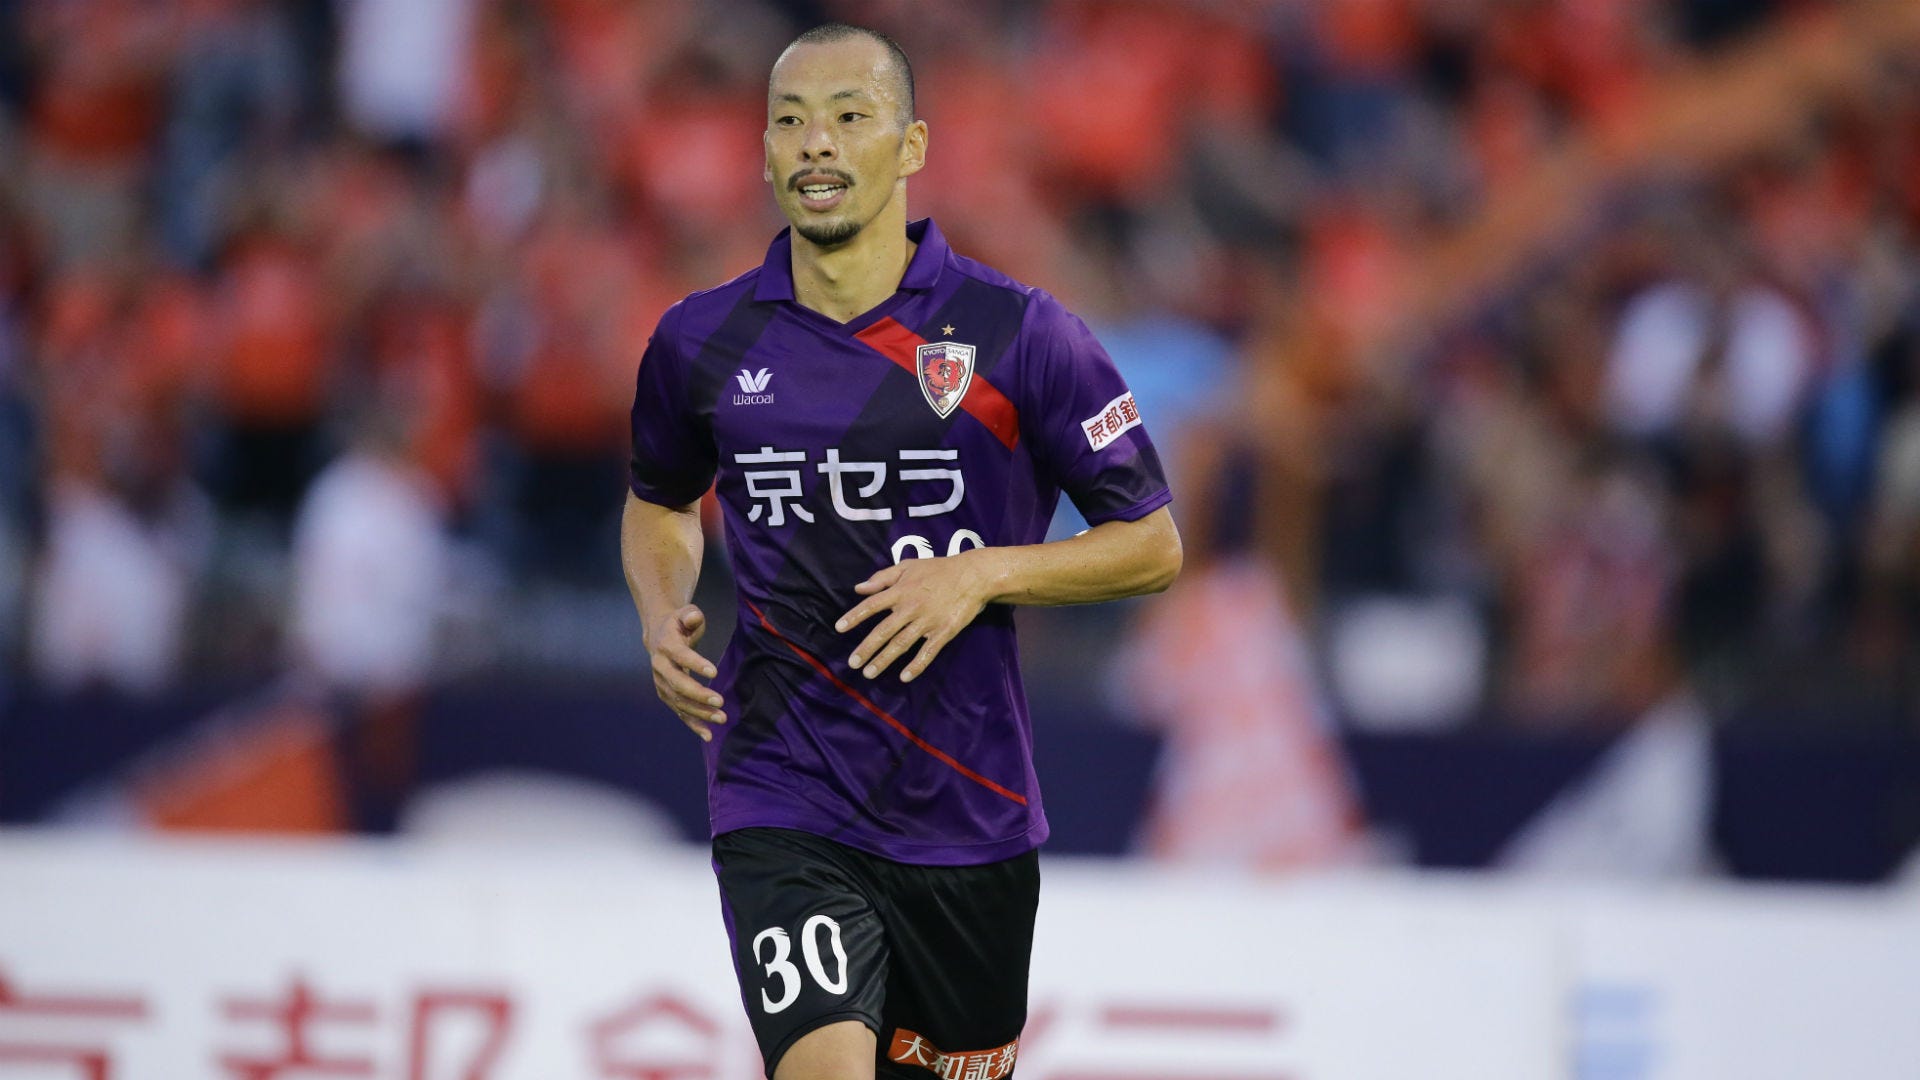 19シーズン 京都サンガf C のチケット購入方法と視聴方法を紹介 Goal Com 日本